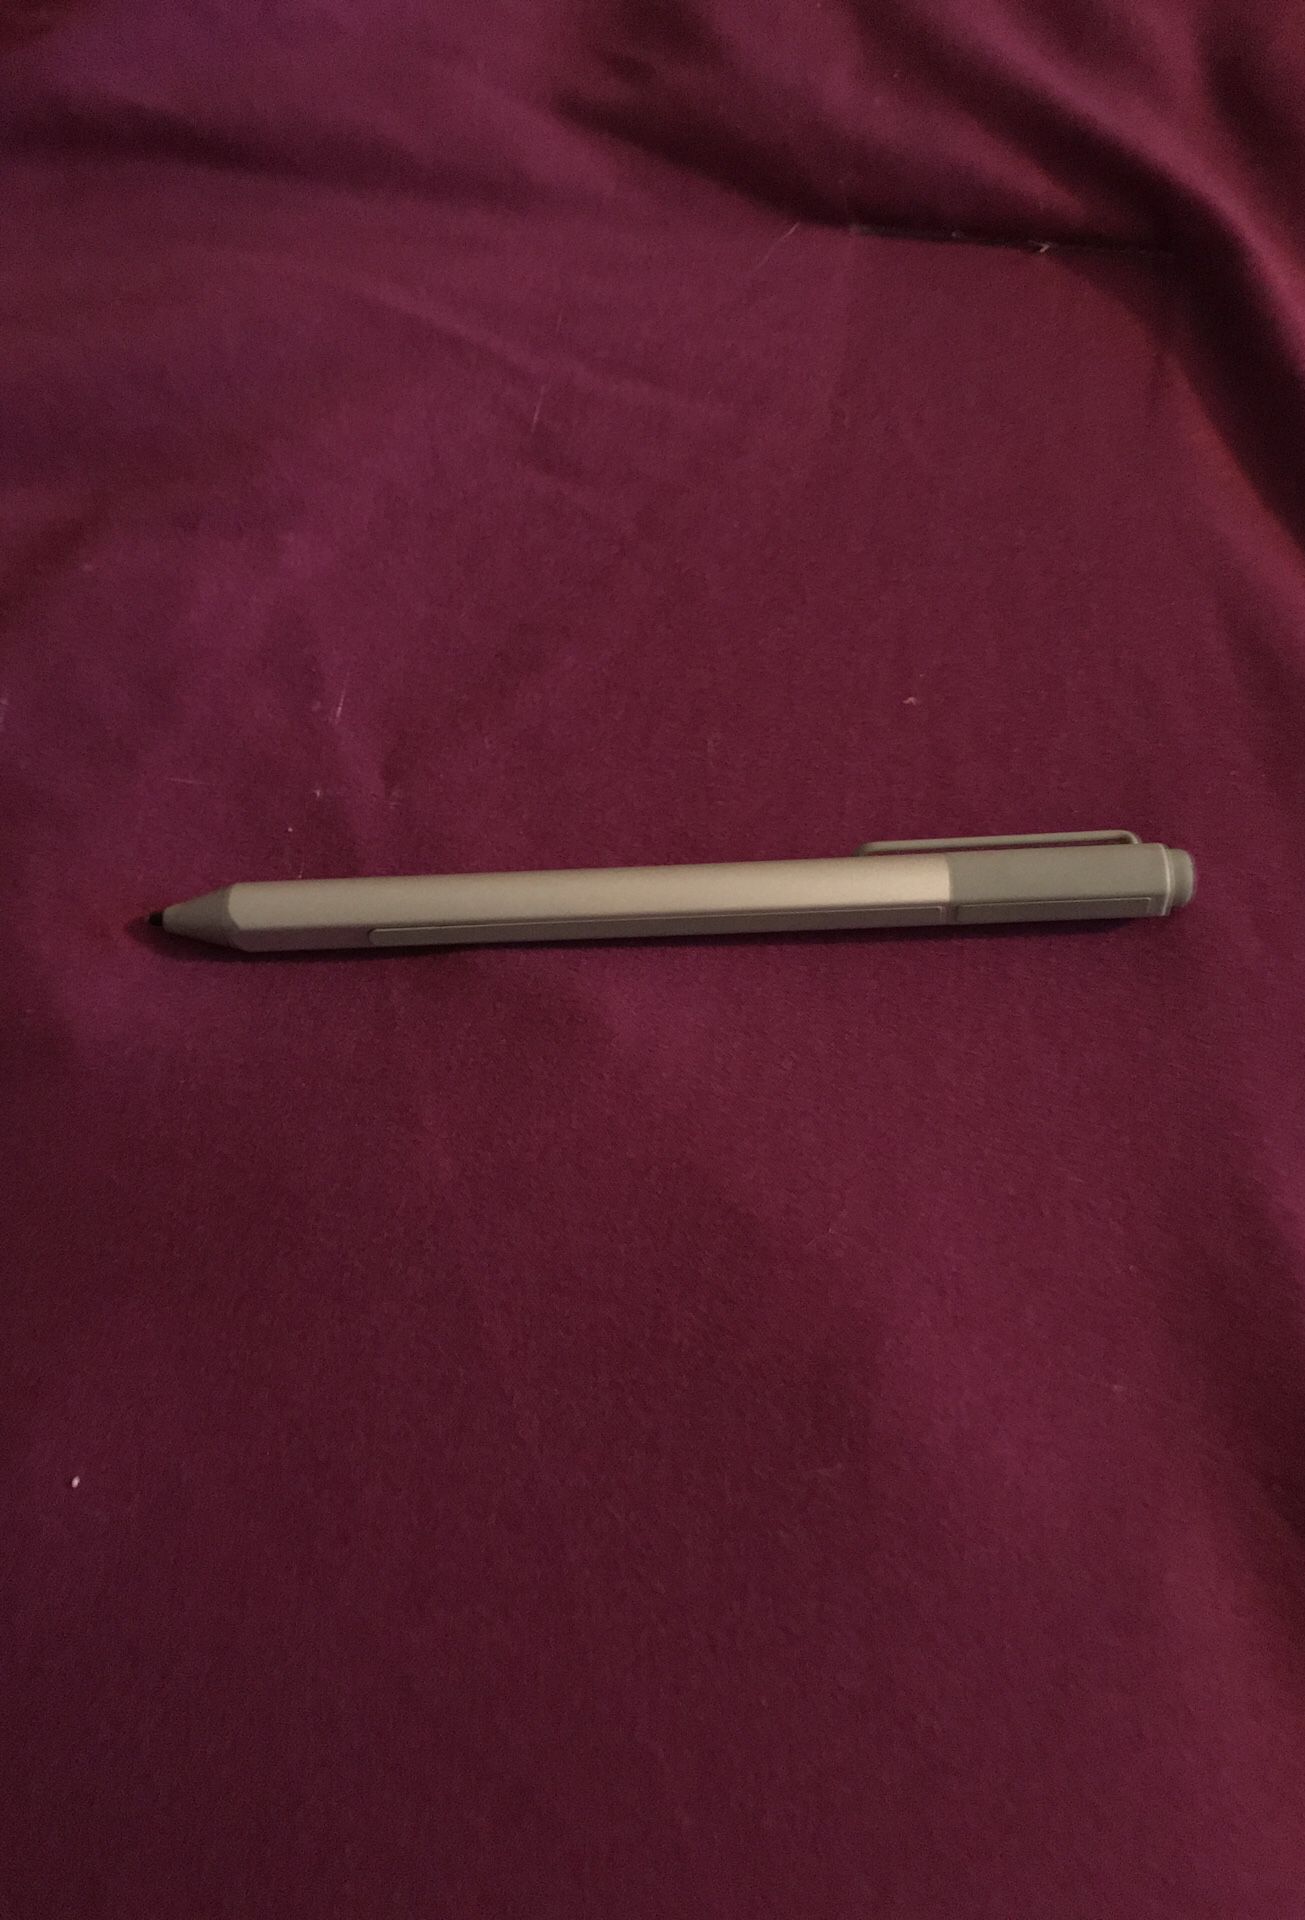 Microsoft surface pen- titanium